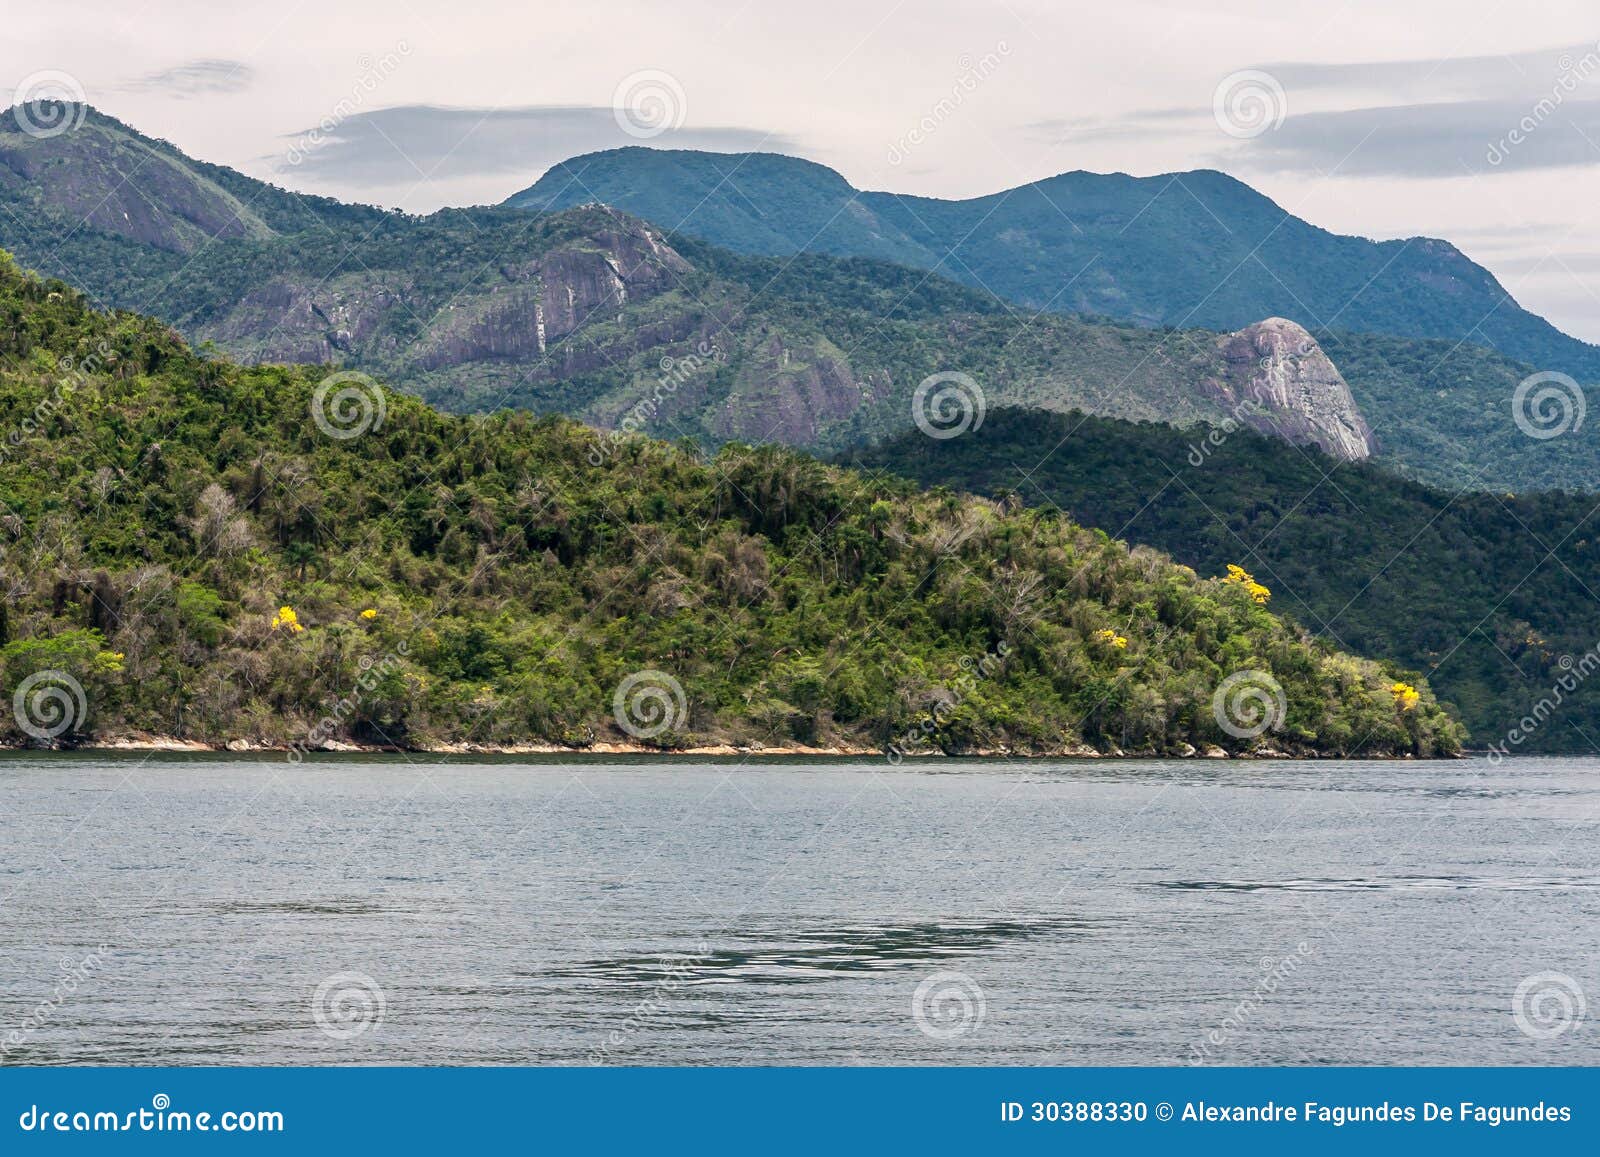 paraty bay rio de janeiro brazil